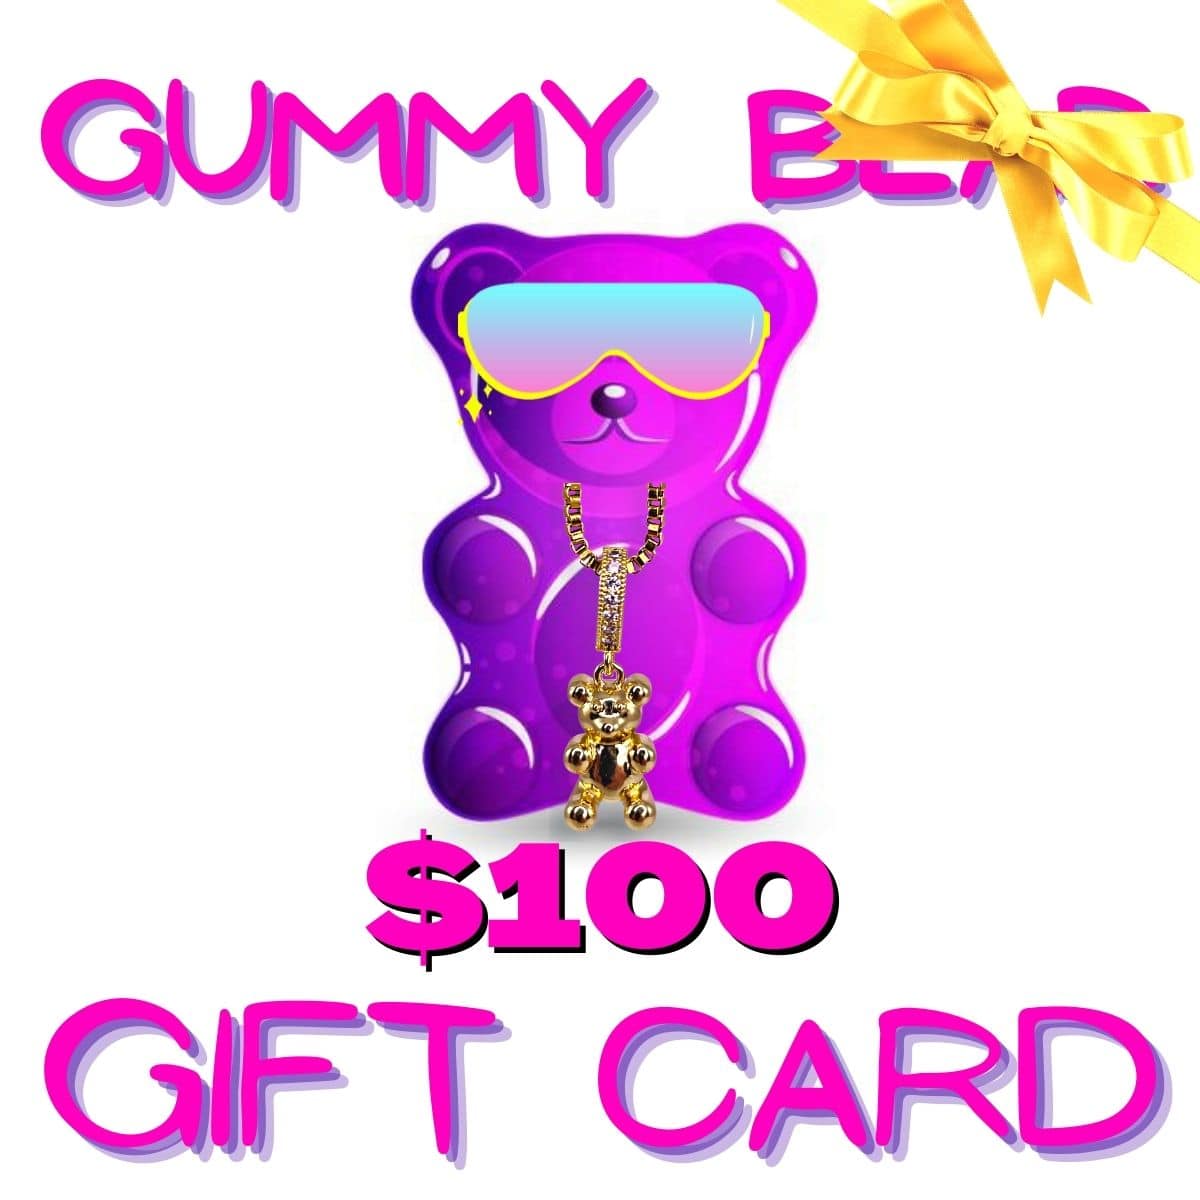 gummy bear bling $100 gift card - gummy bear bling